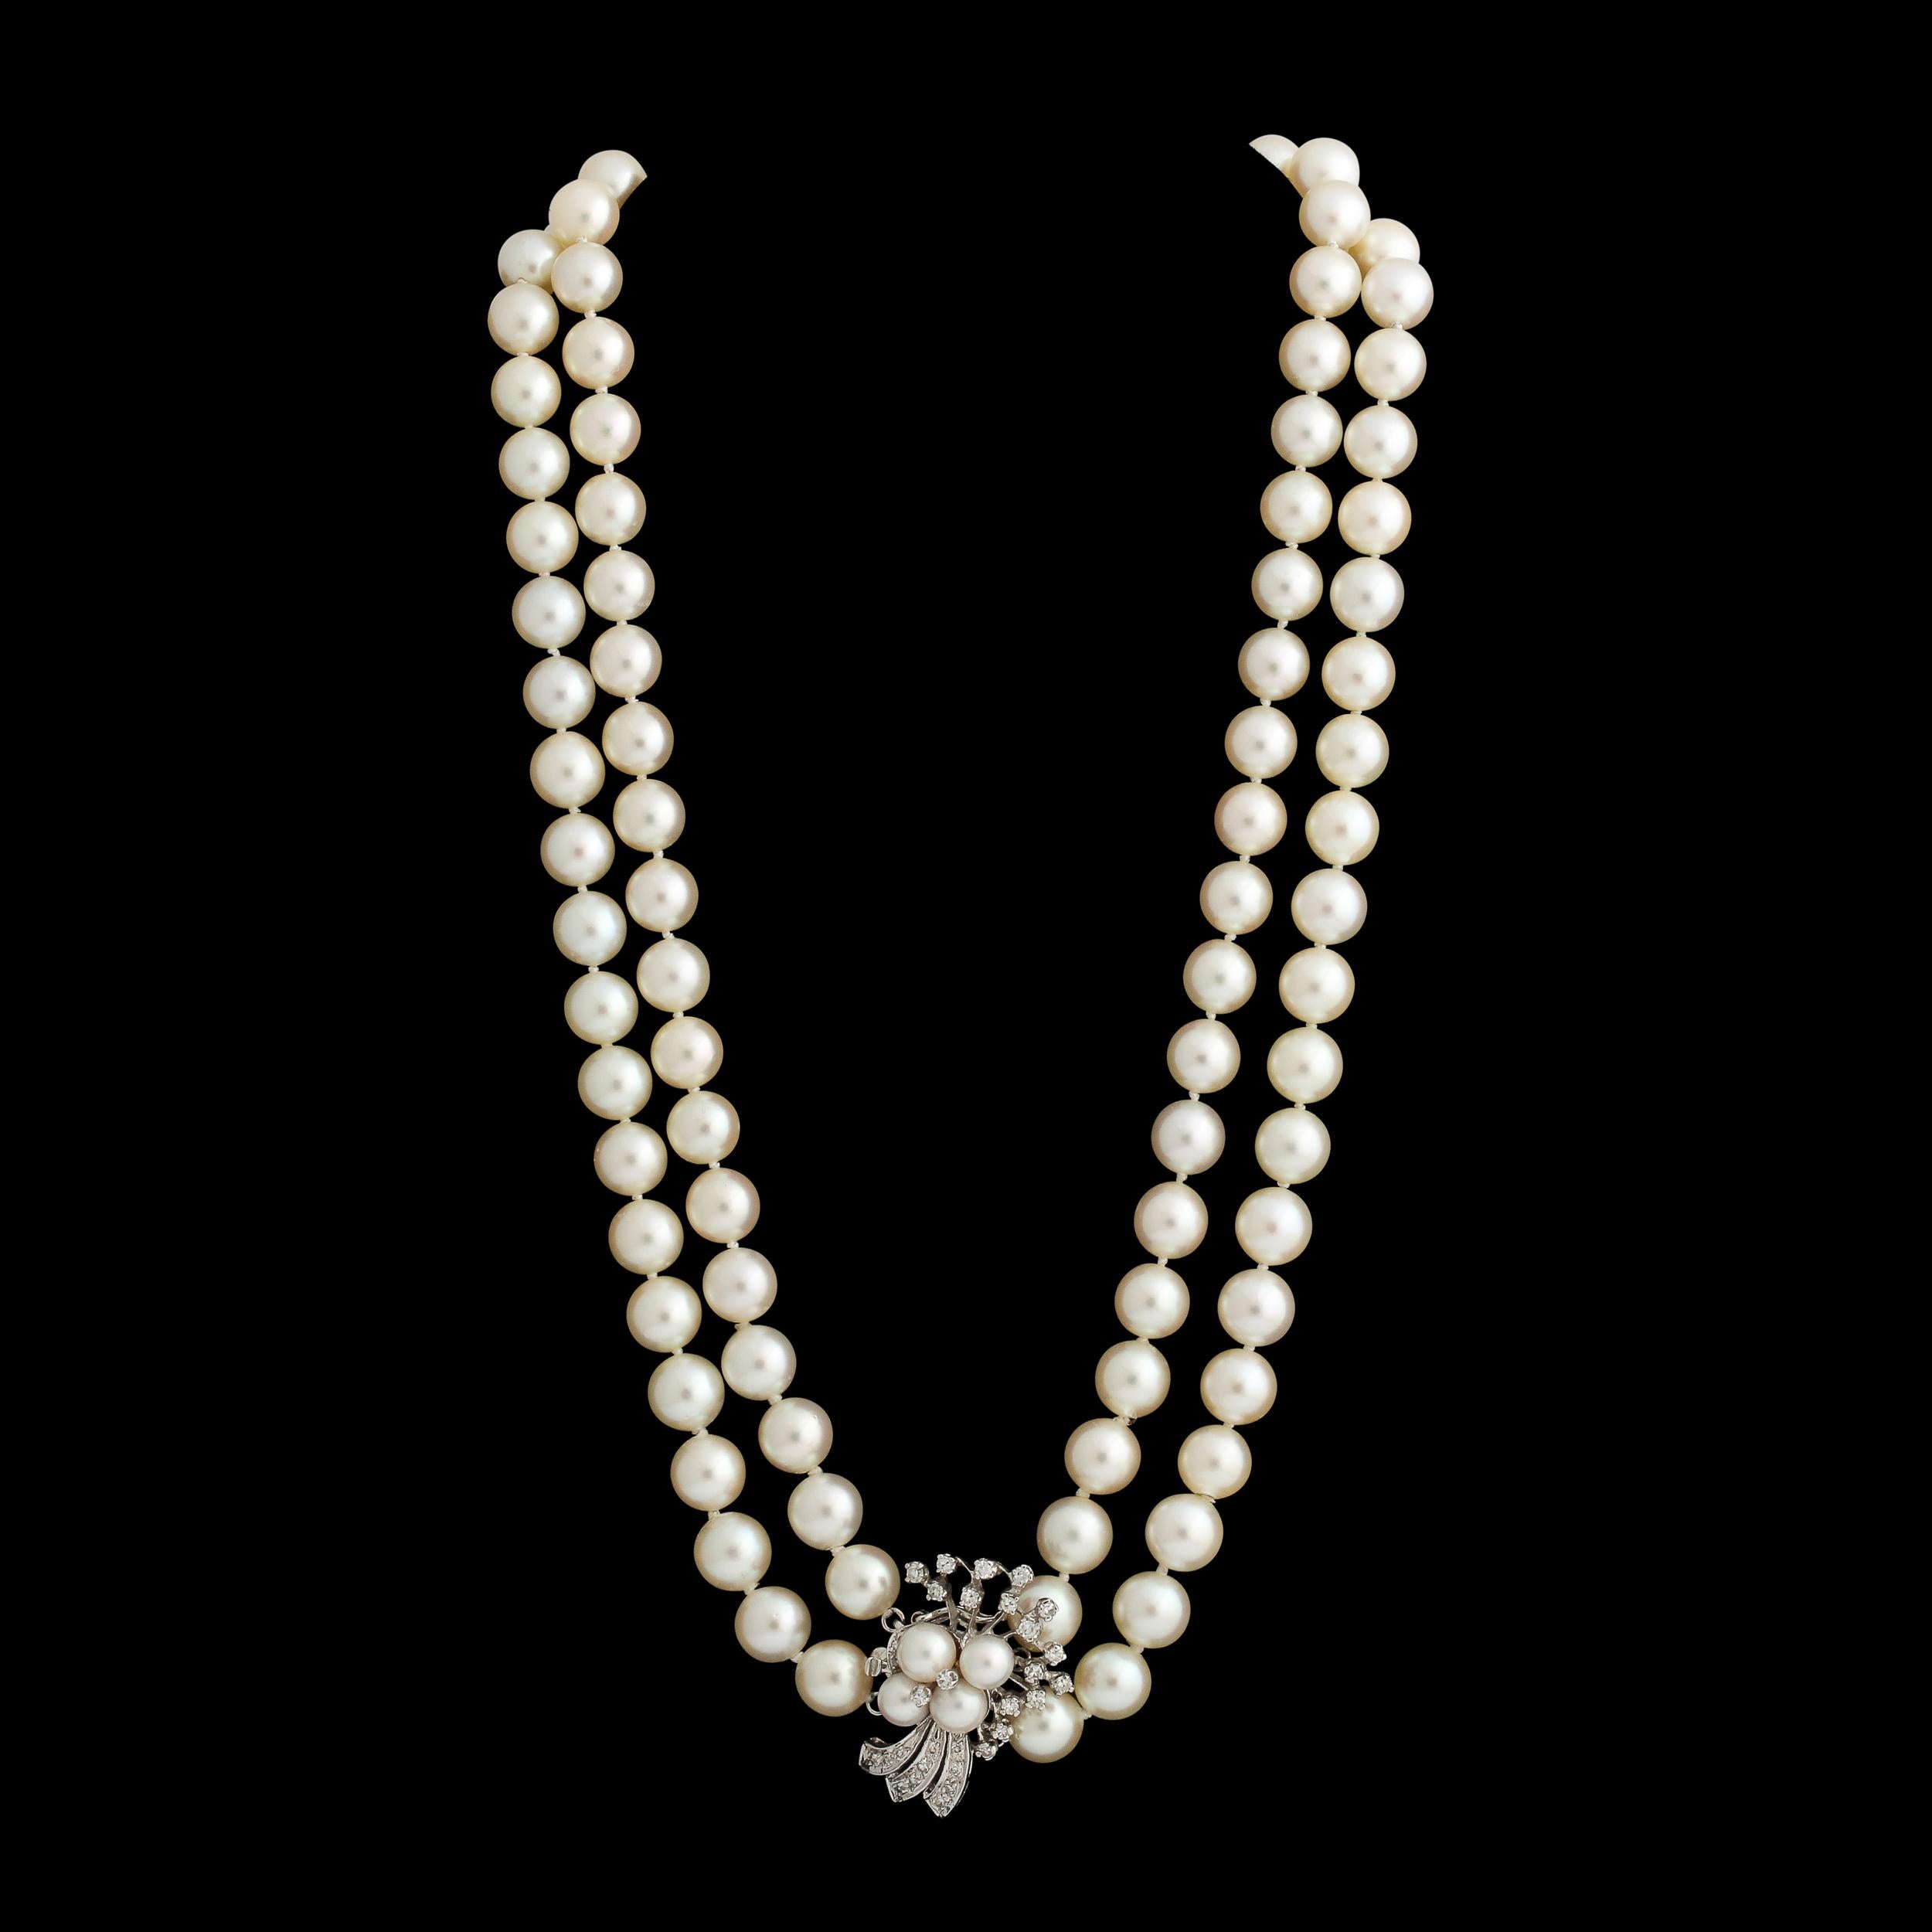 Diese doppelreihige Perlenkette ist mit einem Diamant- und Zuchtperlenverschluss aus 14k Weißgold besetzt  Die Zuchtperlen sind jeweils ca. 8 mm groß und haben eine schöne cremefarbene Farbe und einen guten Glanz mit rosa Untertönen. Die Diamanten